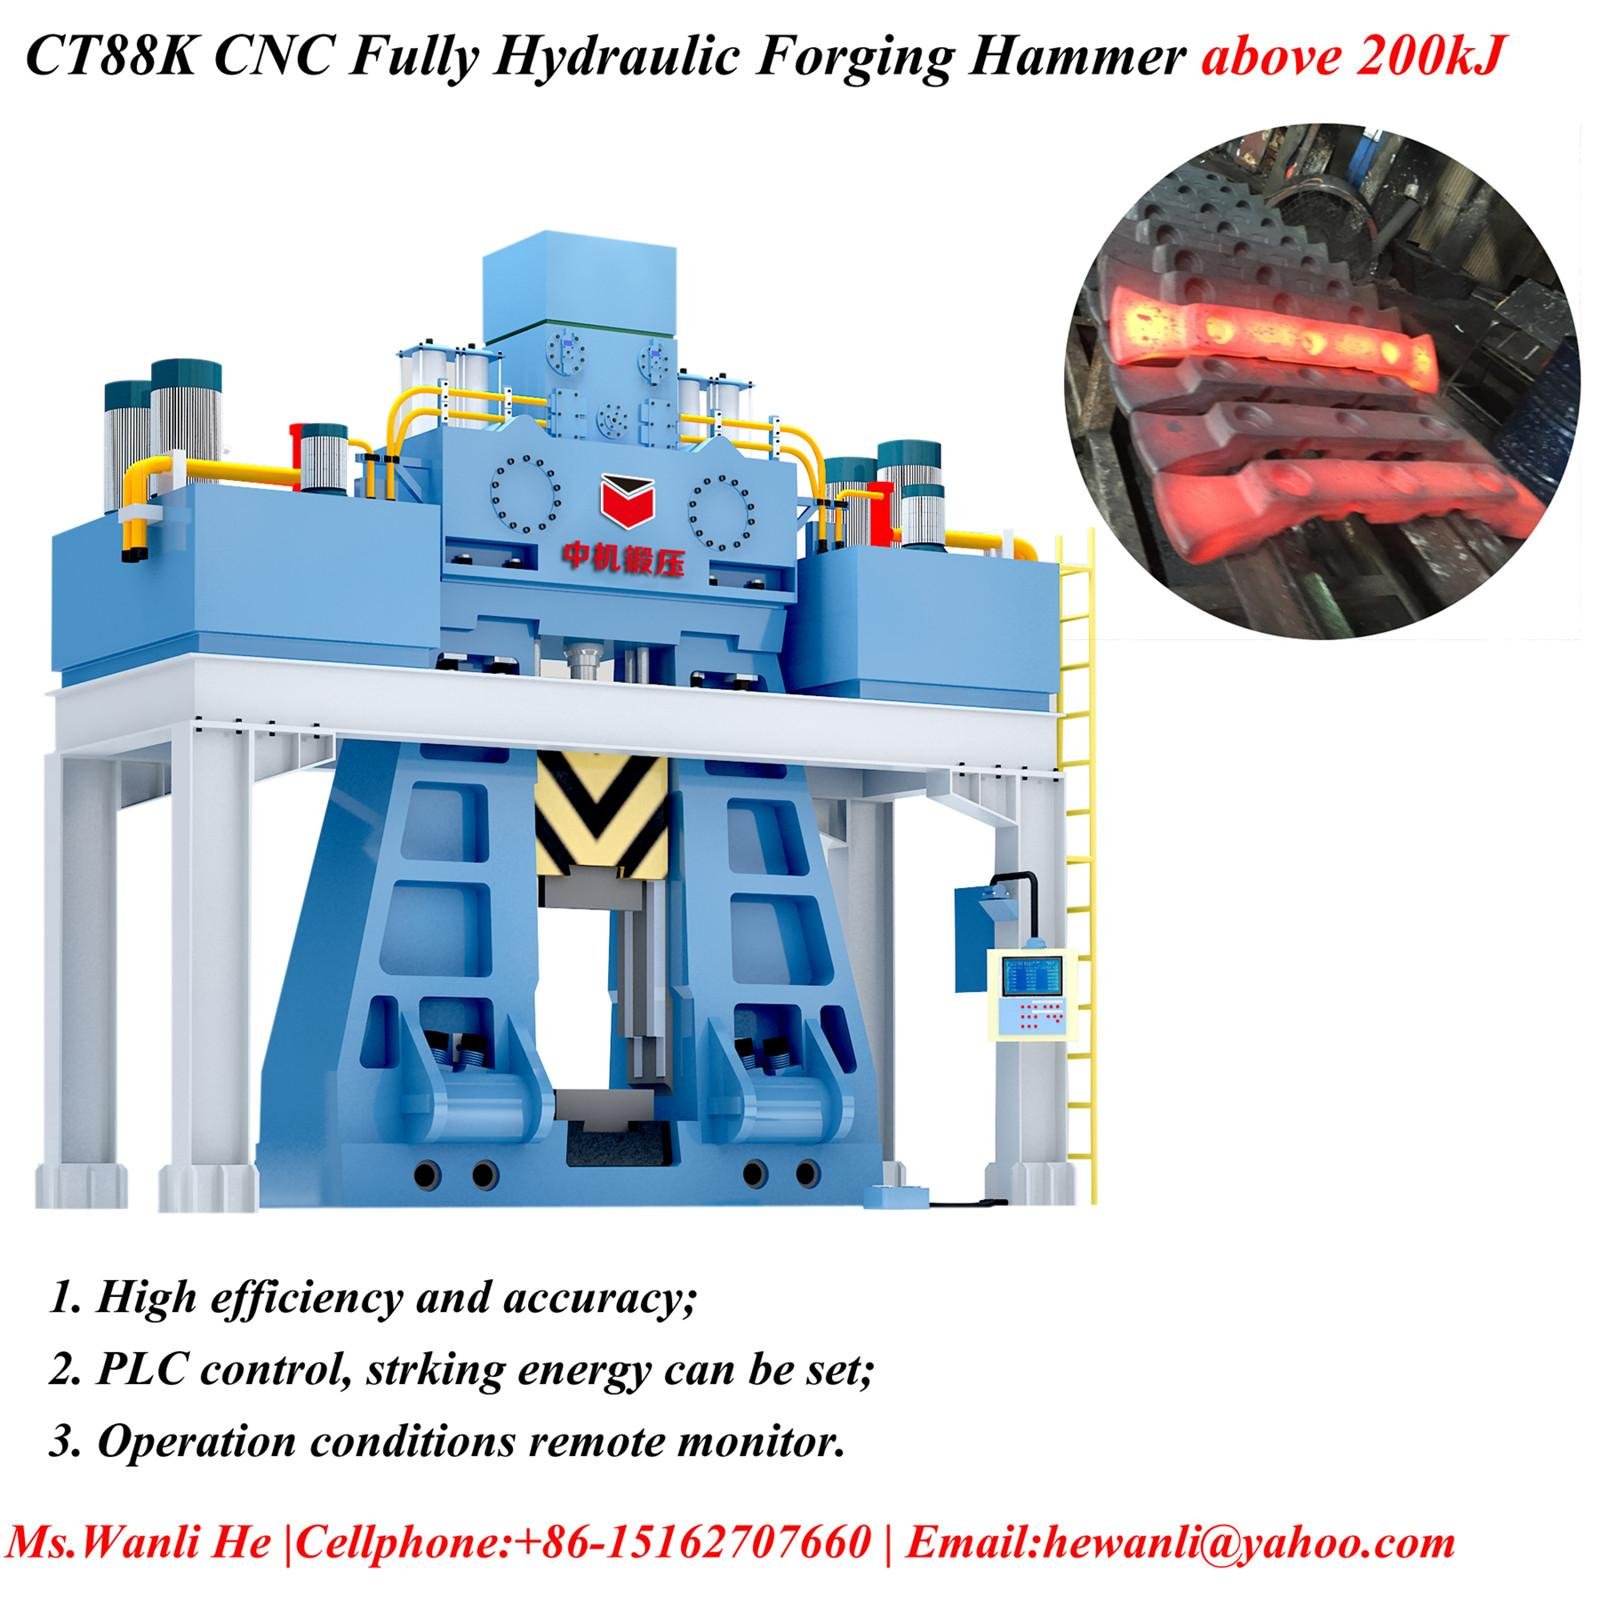 CT88K CNC fully hydraulic die forging hammer 200-500kJ